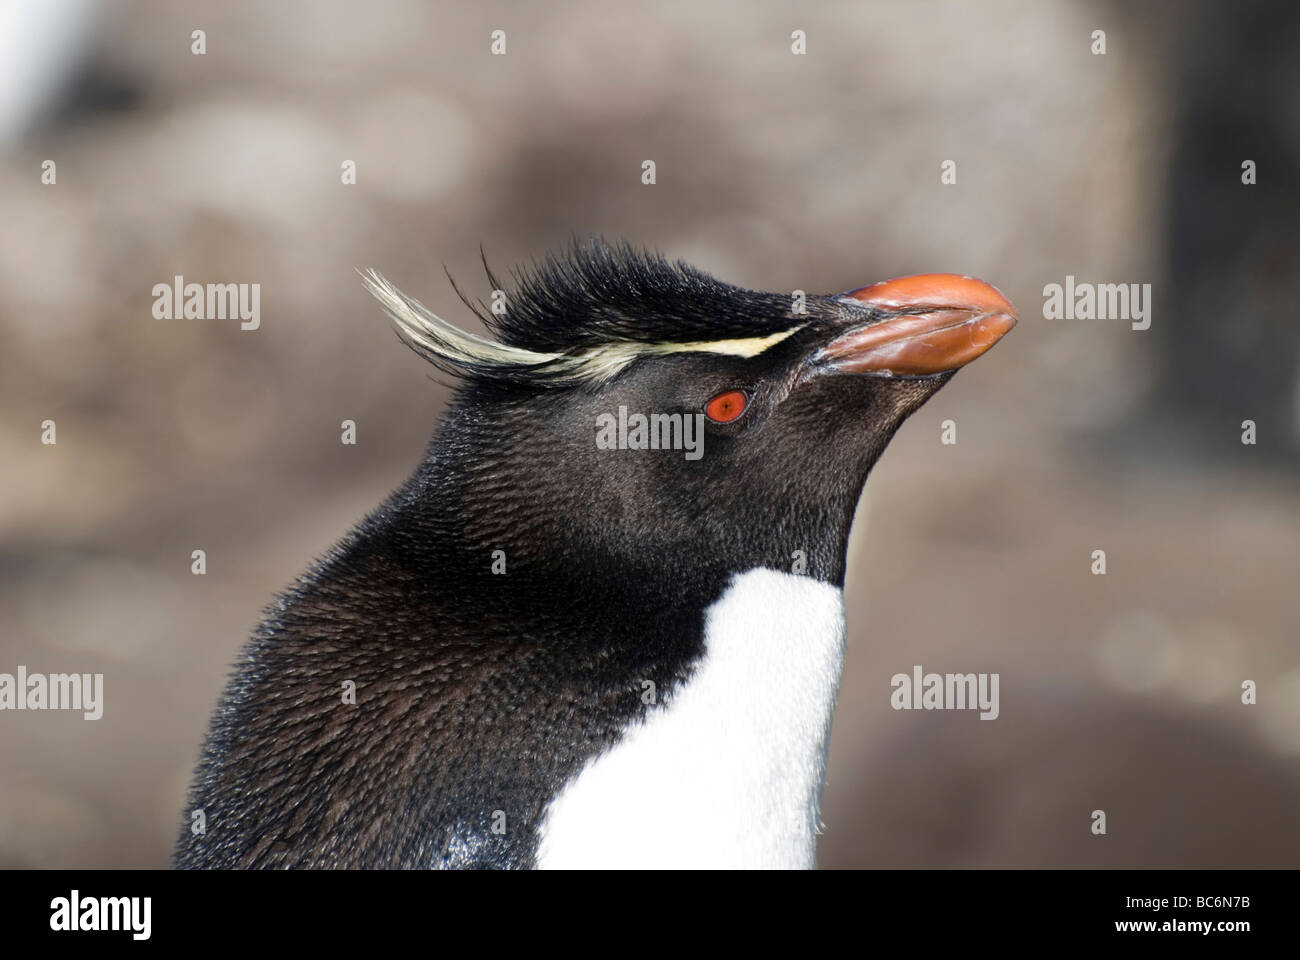 Gros plan de la tête d'un sud de Rockhopper Penguin, Eudyptes chrysocome, montrant ses crêtes et bec jaune rouge Banque D'Images